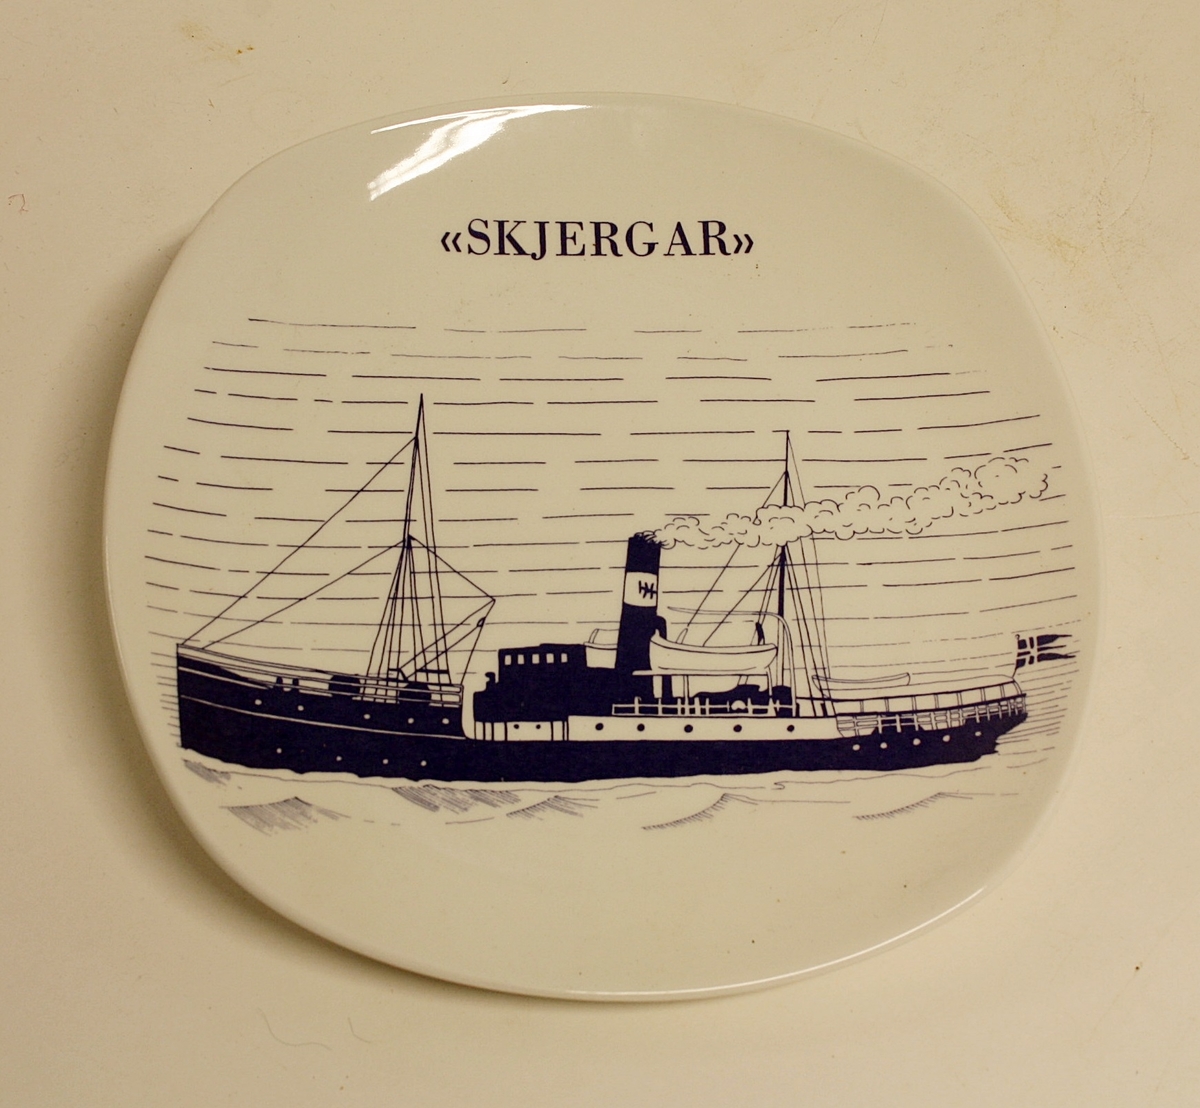 Avrundet, rektangulært fat med bilde av båten "Skjergar".  Gave fra Øygarden kommune til Kystmuseet i Øygarden.